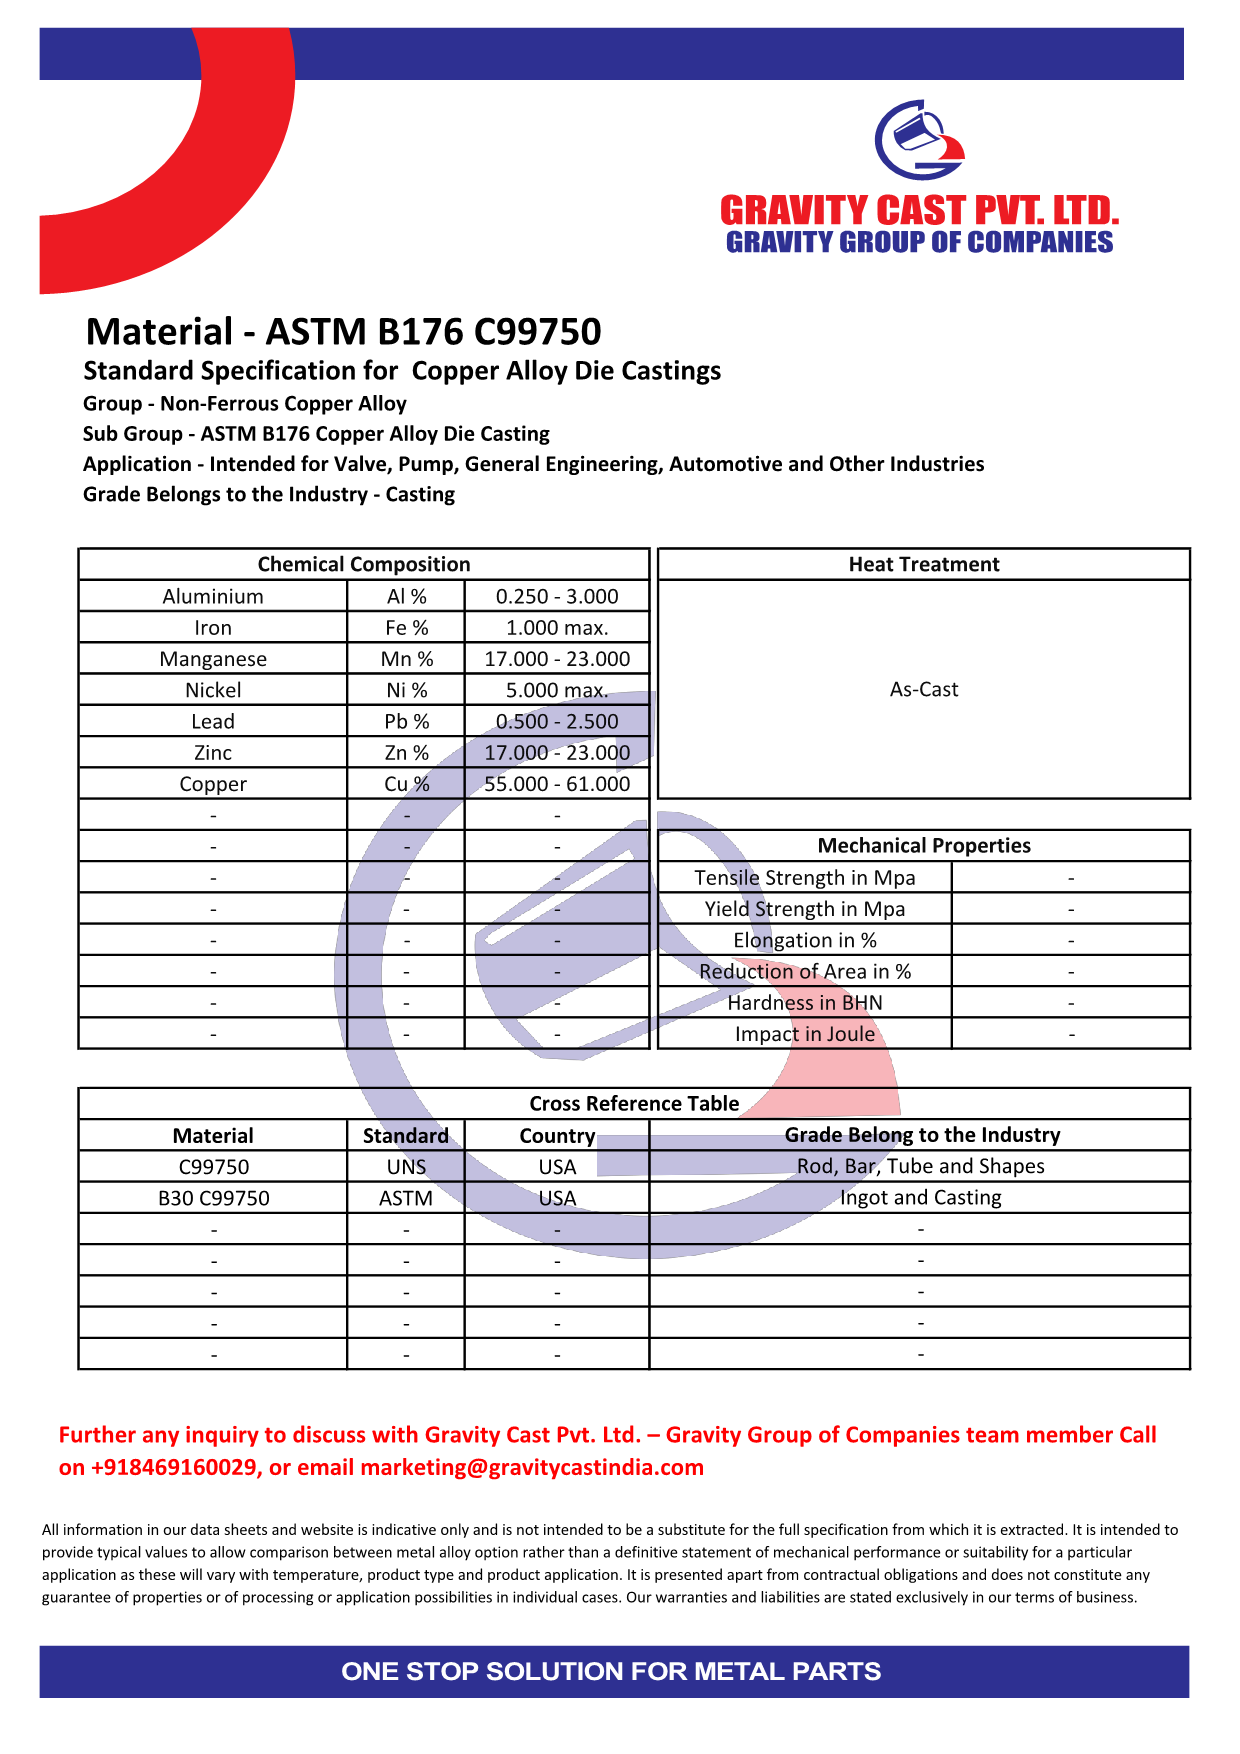 ASTM B176 C99750.pdf